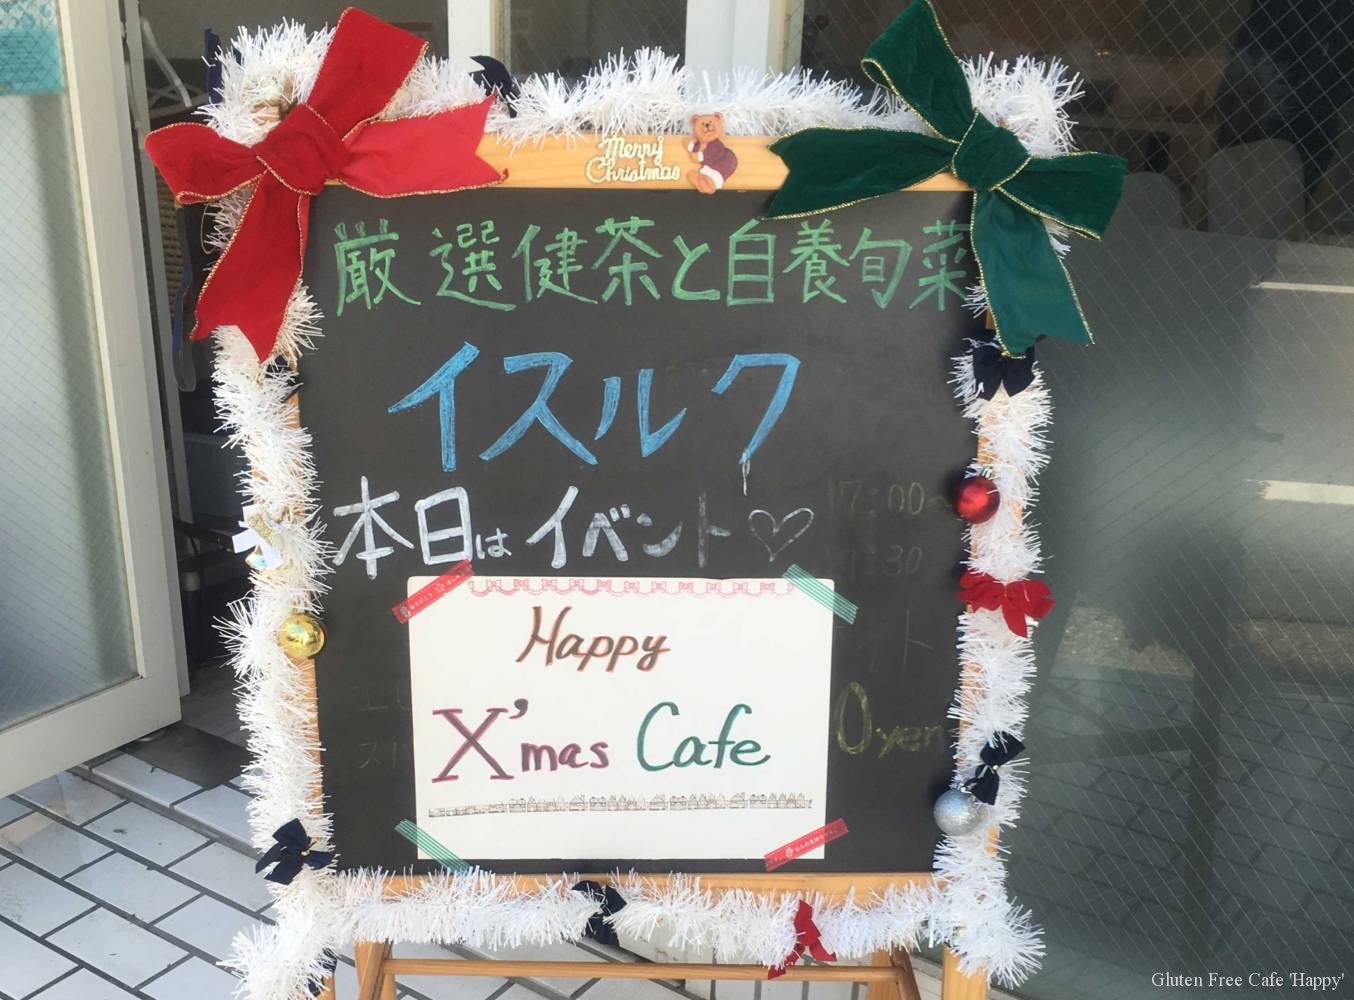 Happyクリスマスcafe 〜グルテンフリーブッフェ&スイーツ〜